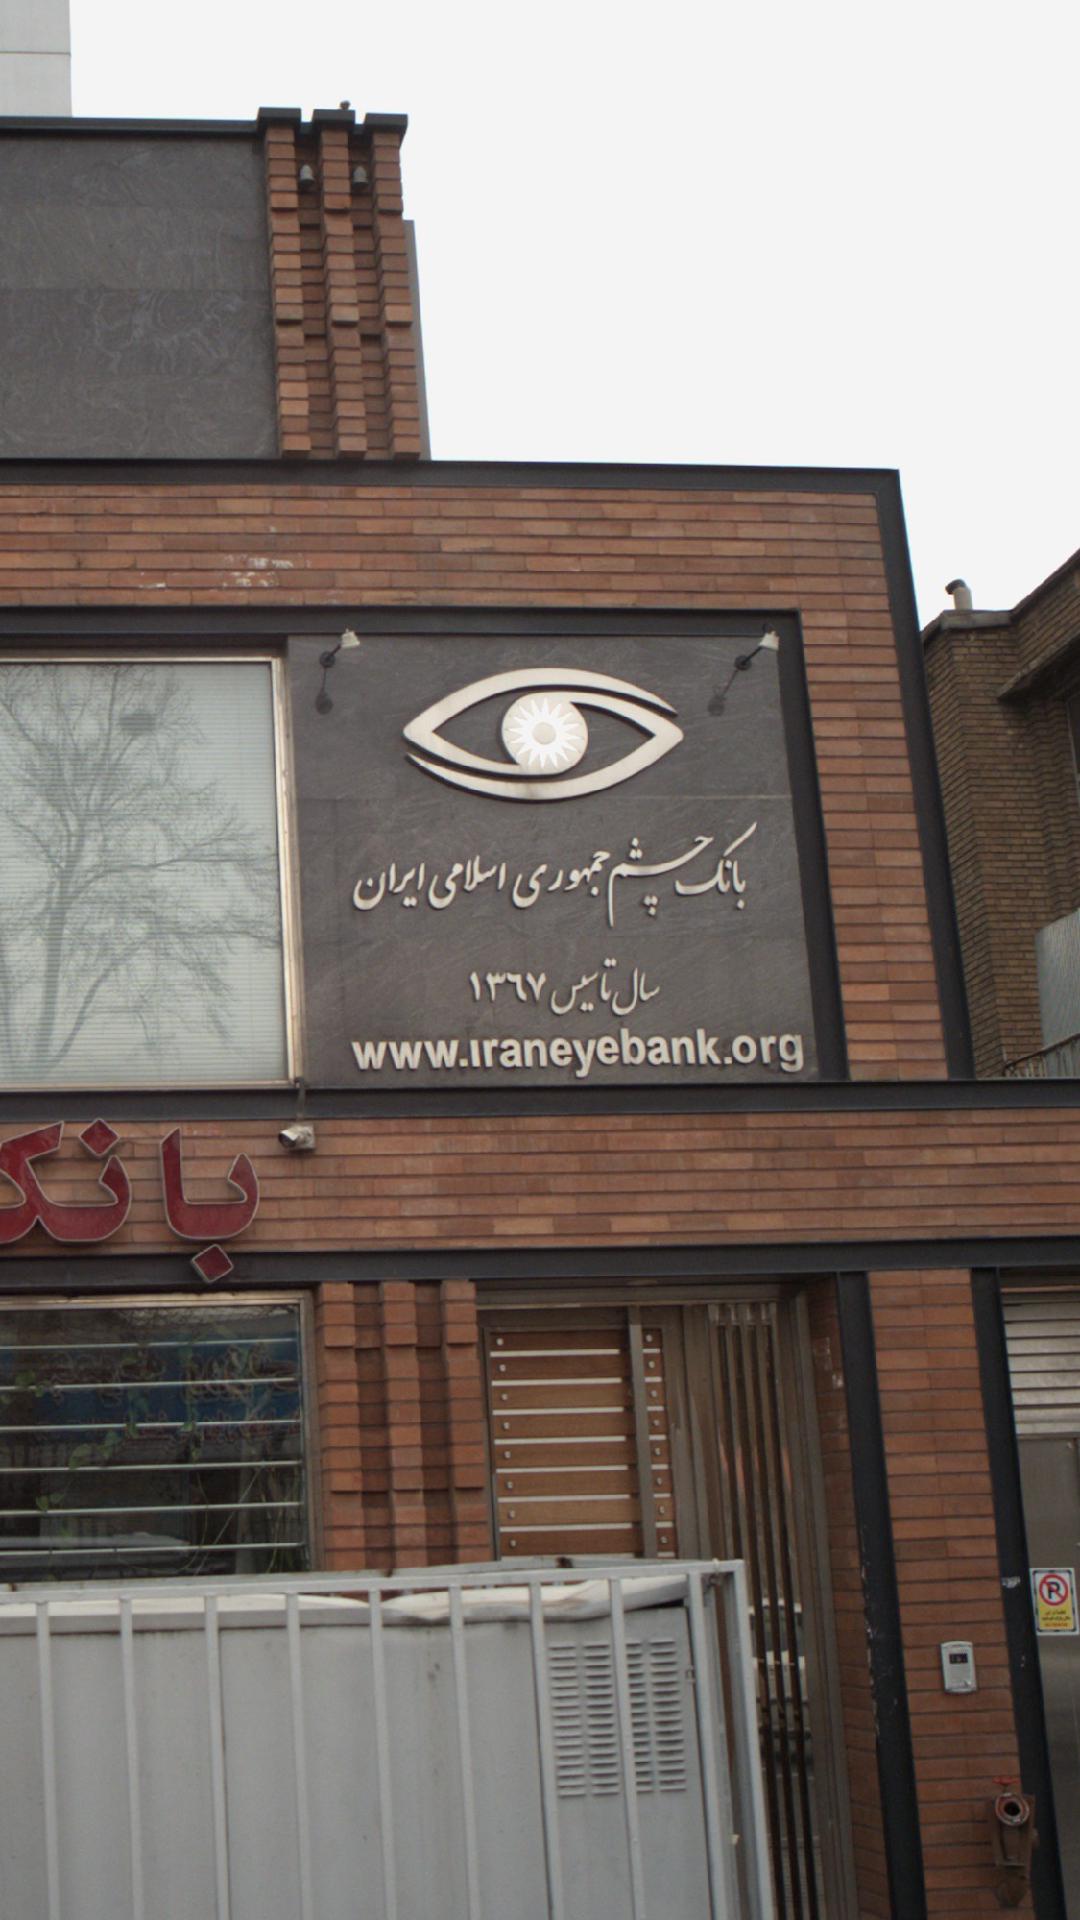 بانک چشم جمهوری اسلامی ایران